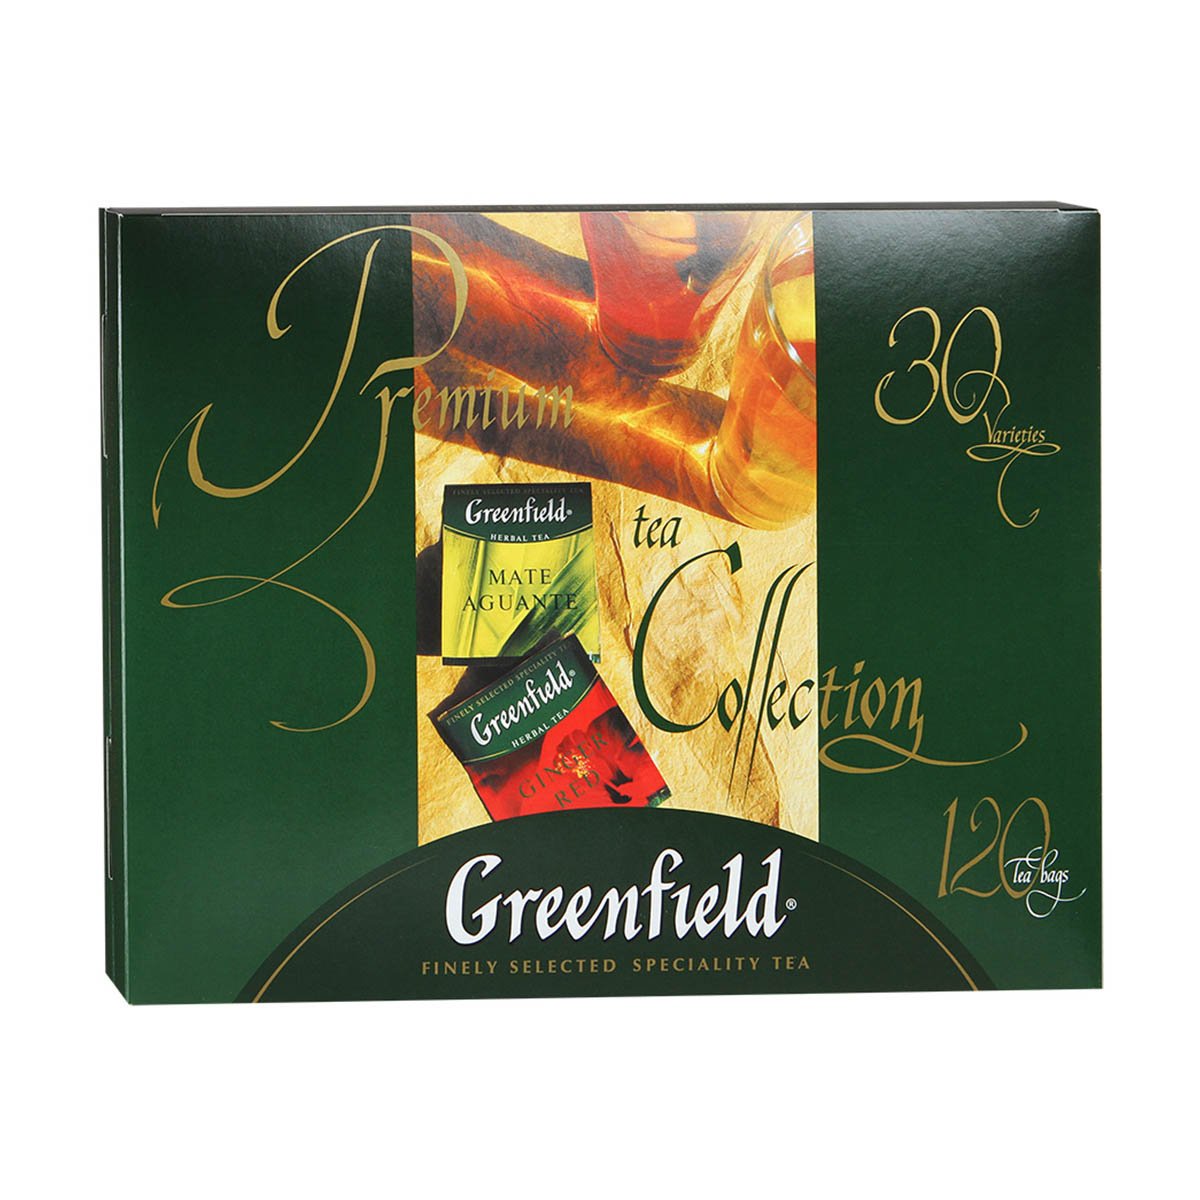 Чай подарочный гринфилд 120 пакетиков. Гринфилд подарочный набор ассорти. Greenfield ассорти 120 пакетиков. Коллекция чая Гринфилд 120 пакетиков. Гринфилд чай набор ассорти 120 пакетиков.